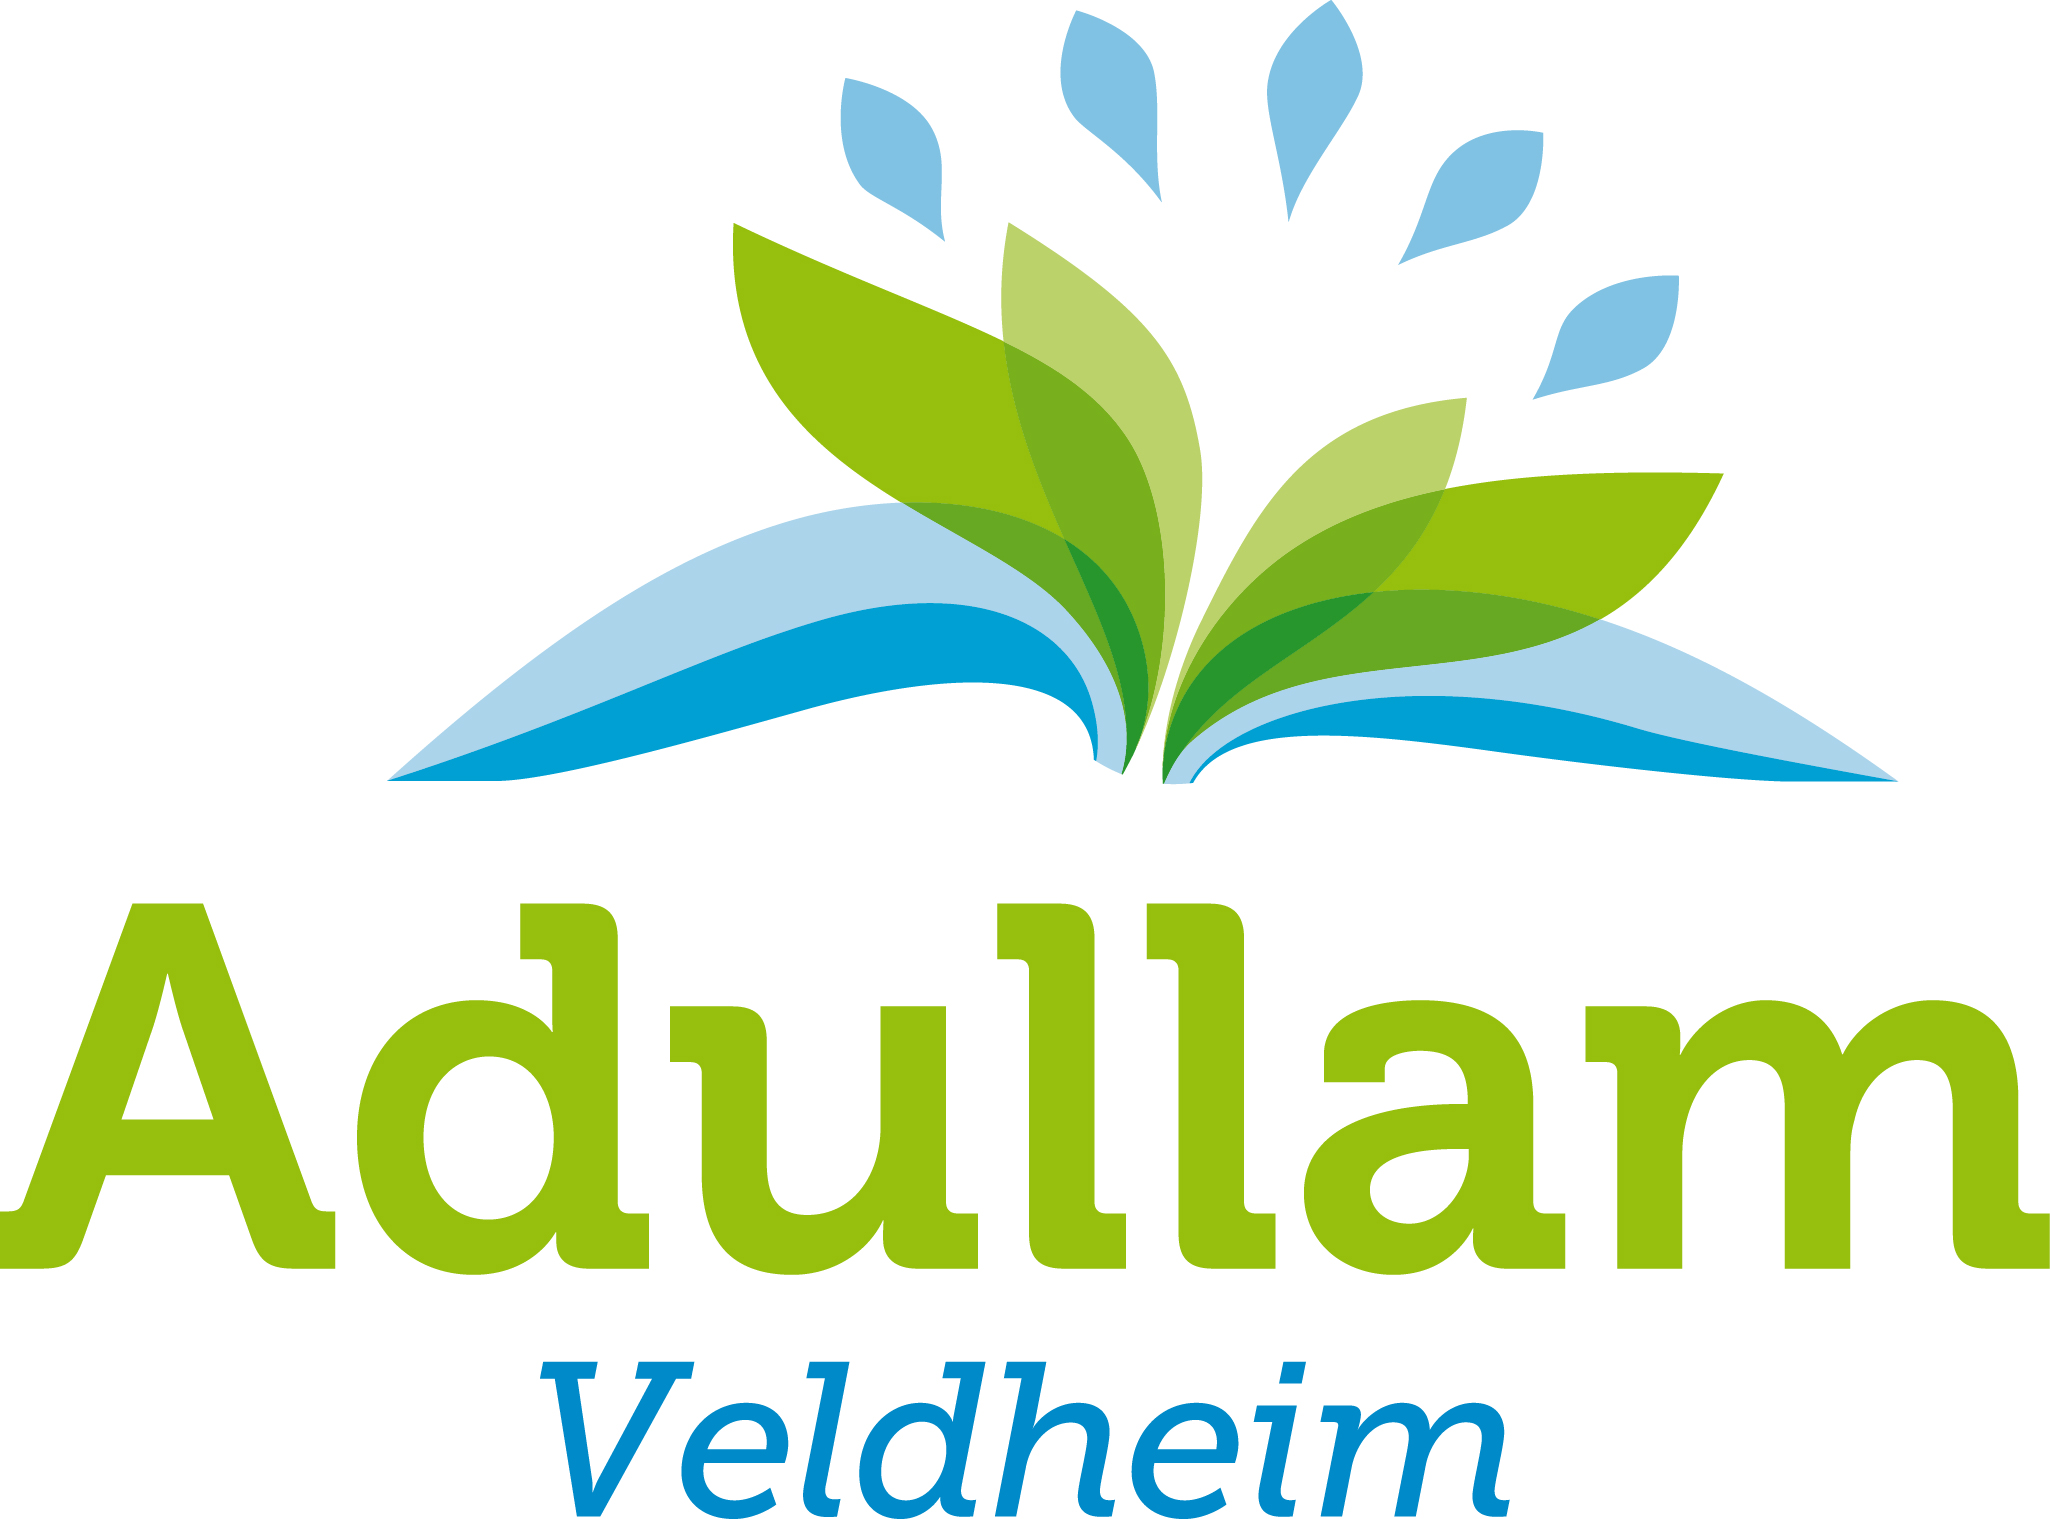 Adullam Veldheim